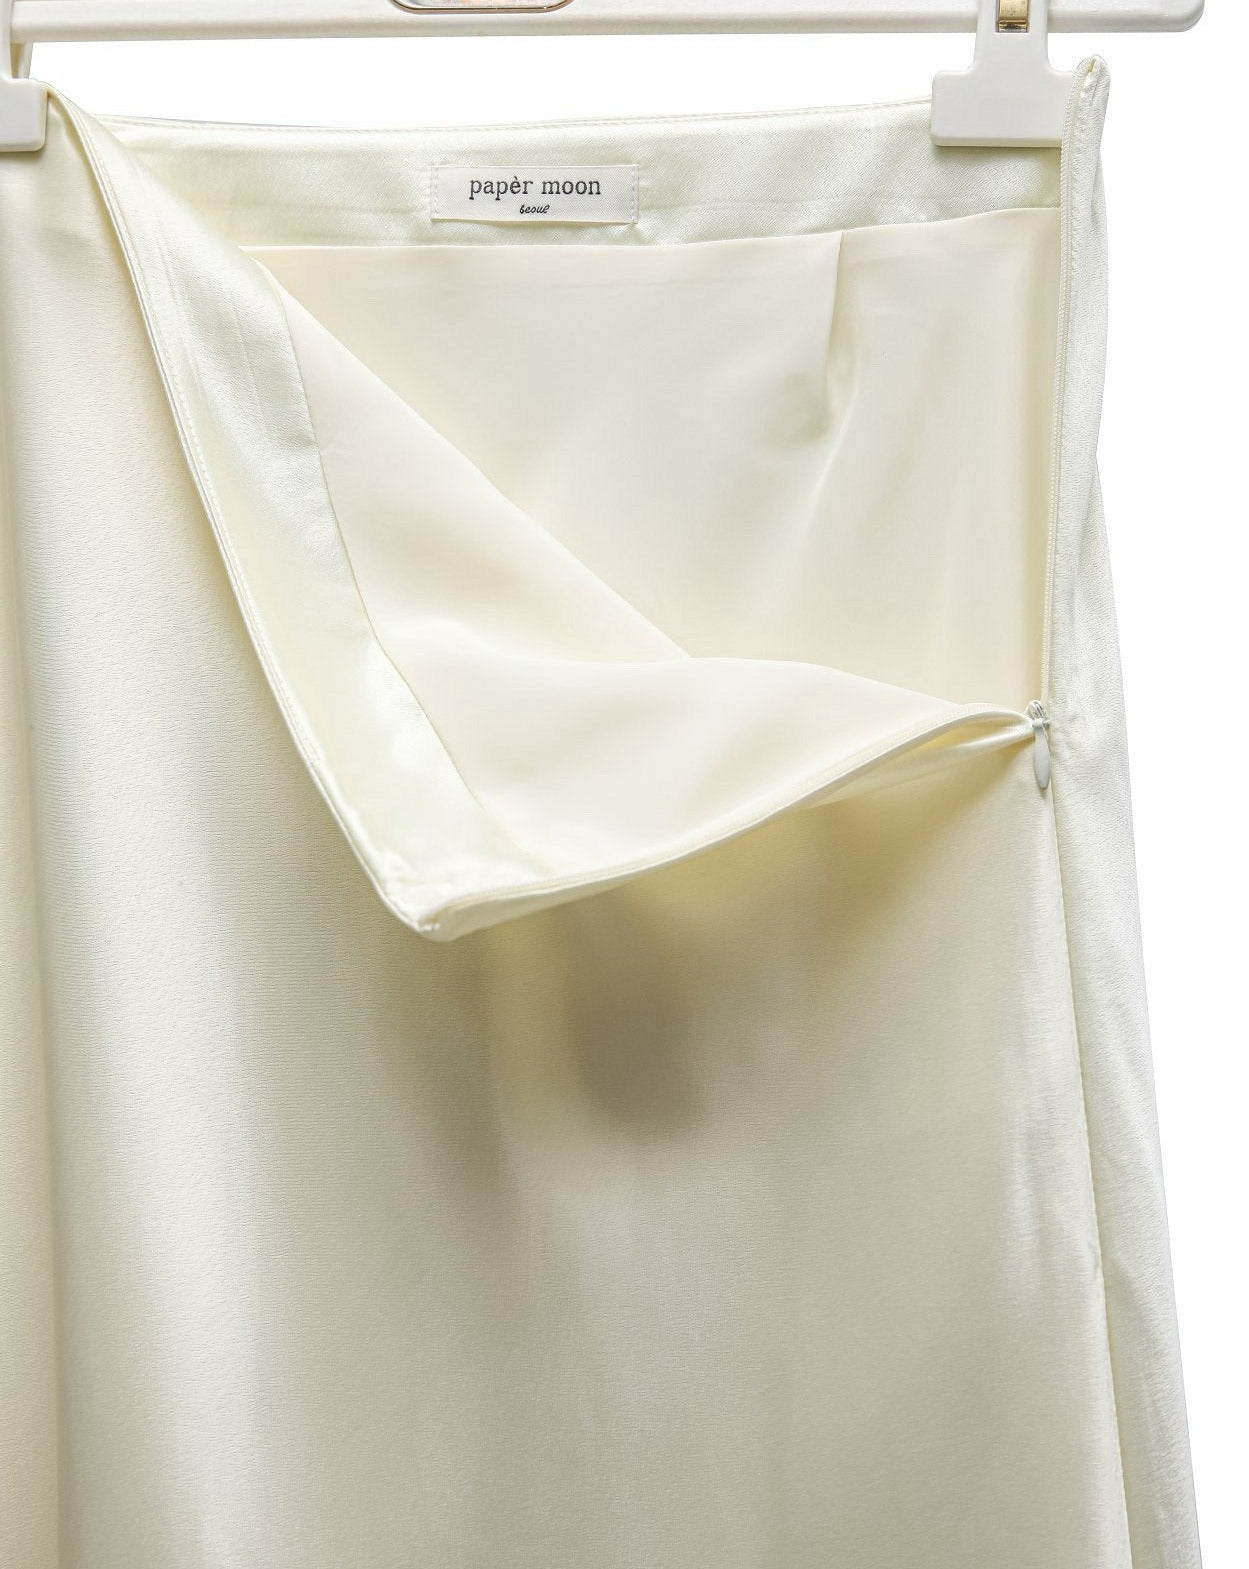 [PAPERMOON] SS / Silky Satin High Waisted Maxi Flared Skirt